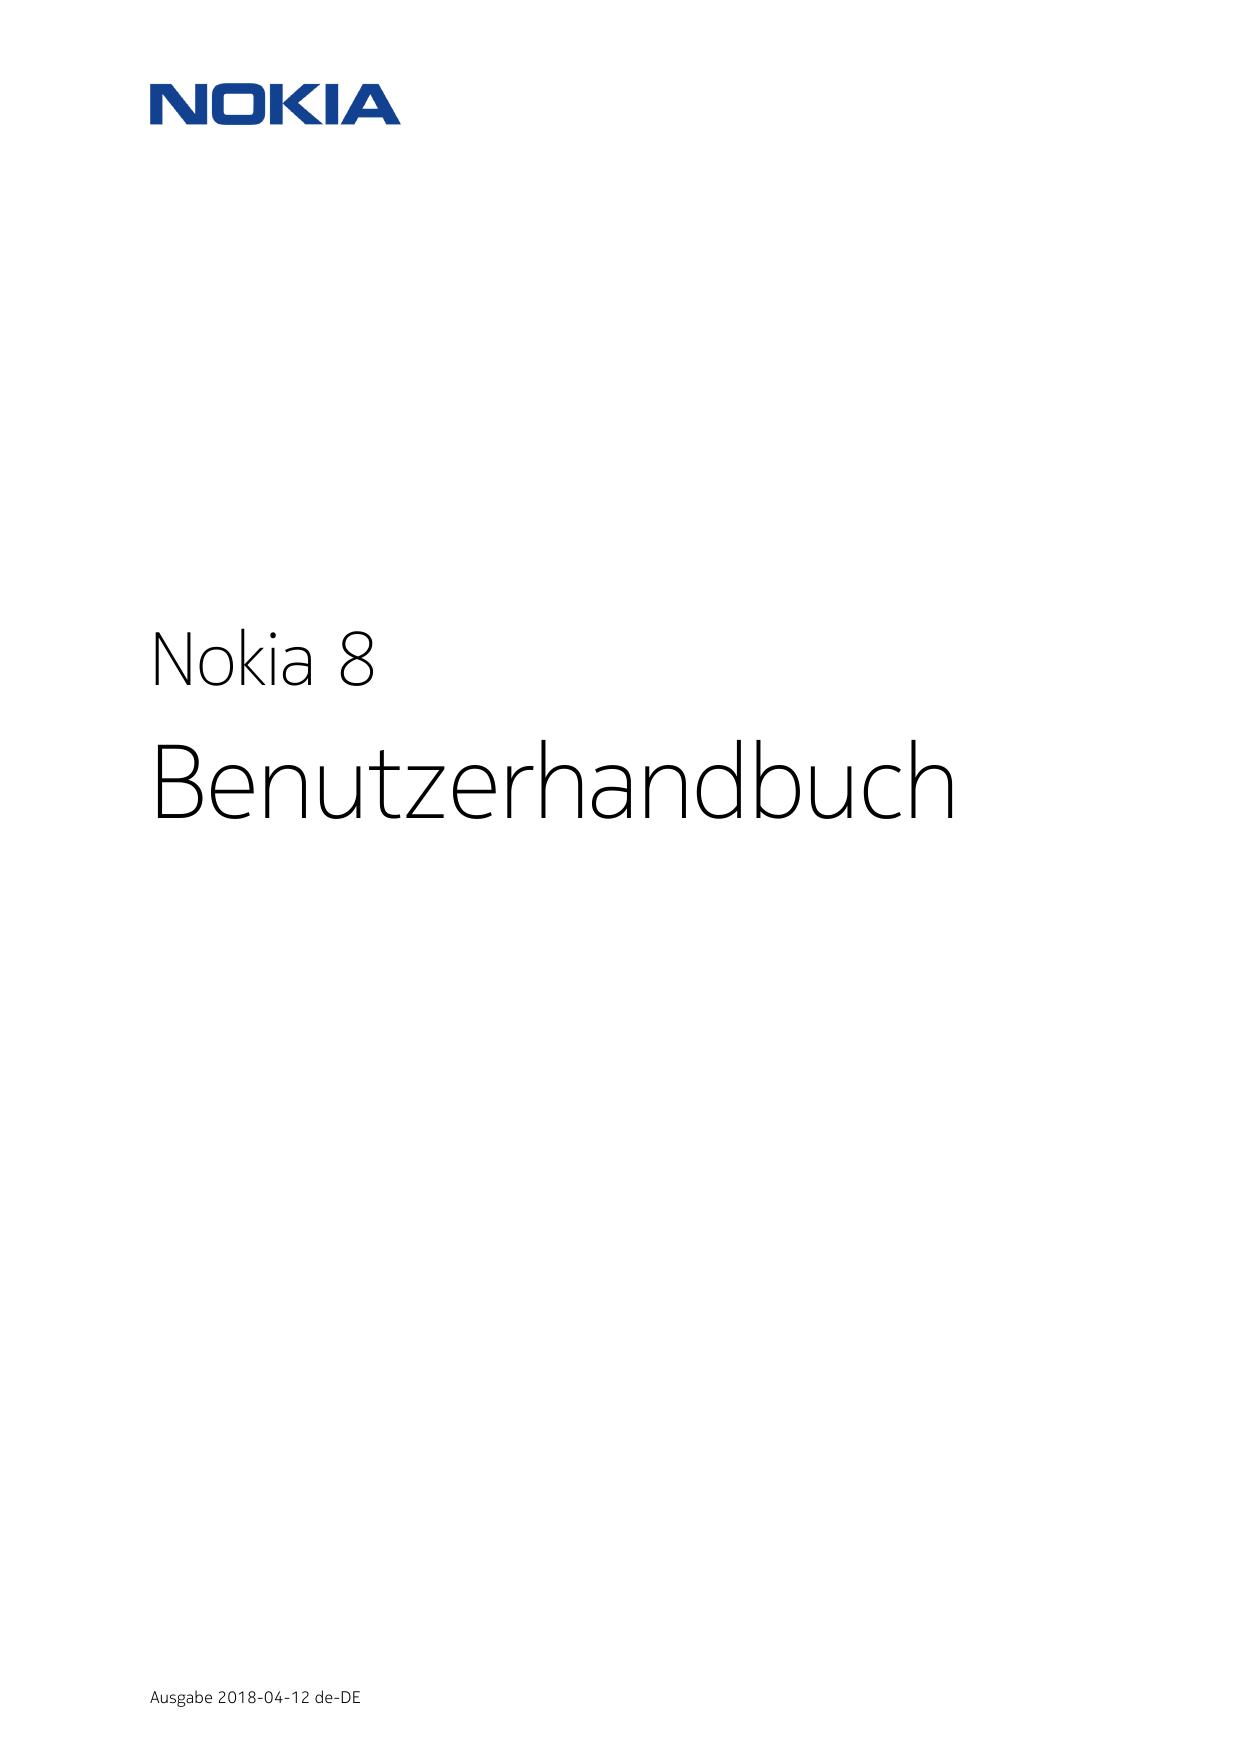 Nokia 8BenutzerhandbuchAusgabe 2018-04-12 de-DE